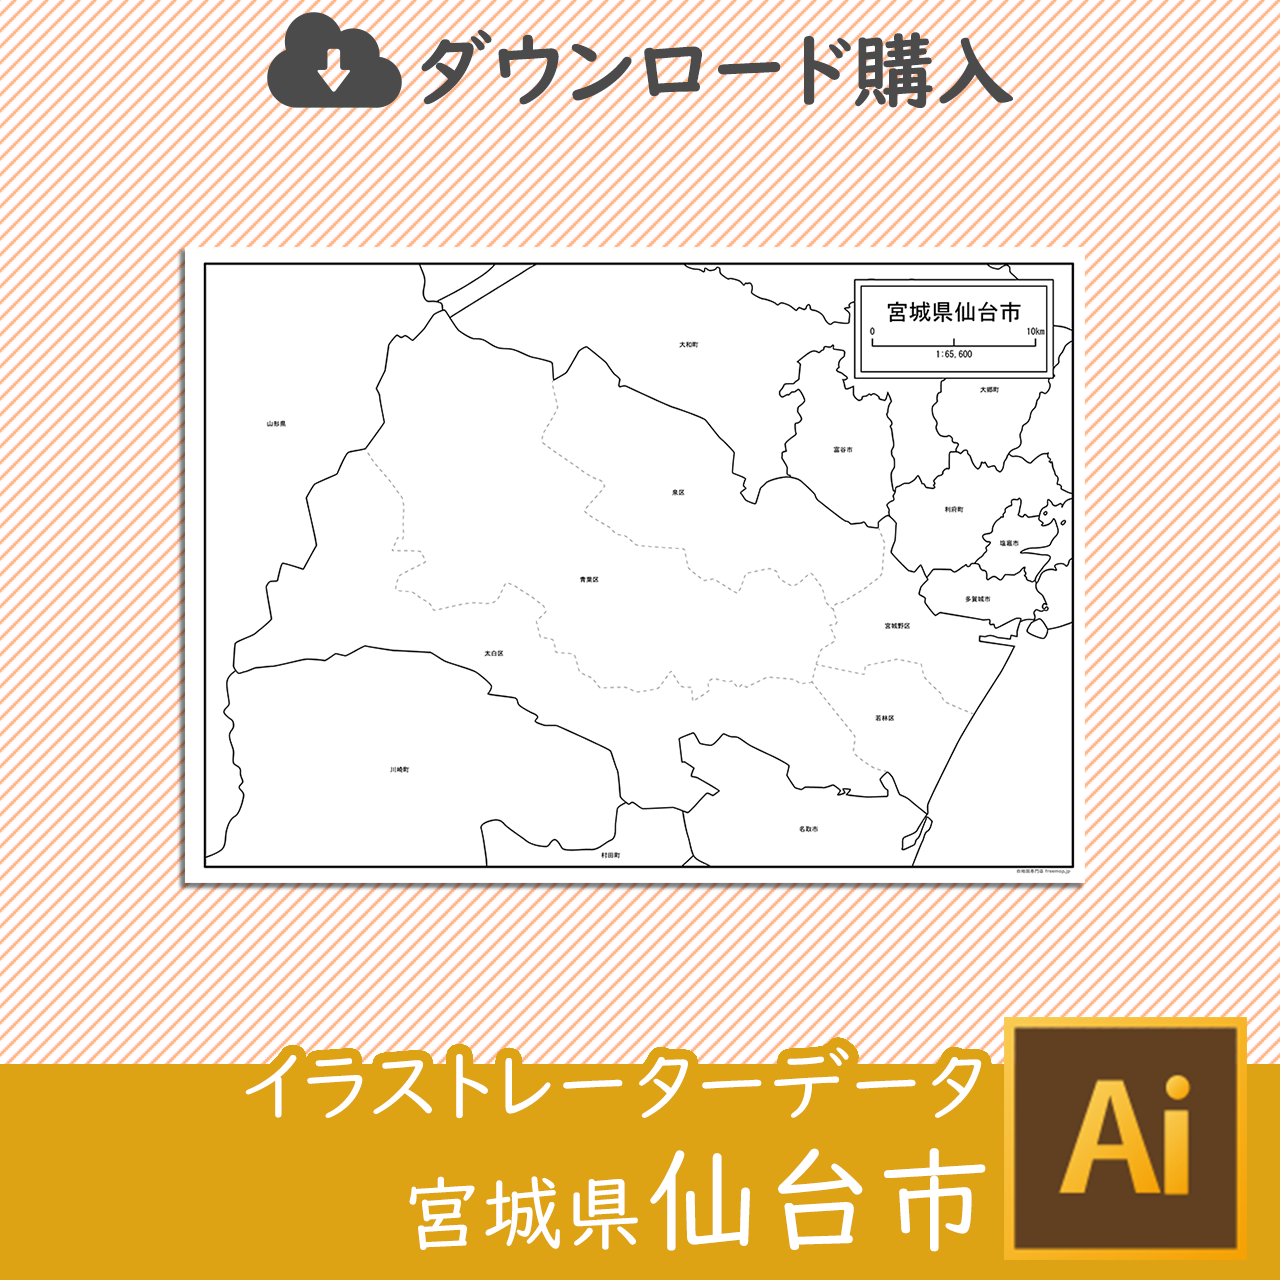 仙台市のaiデータのサムネイル画像